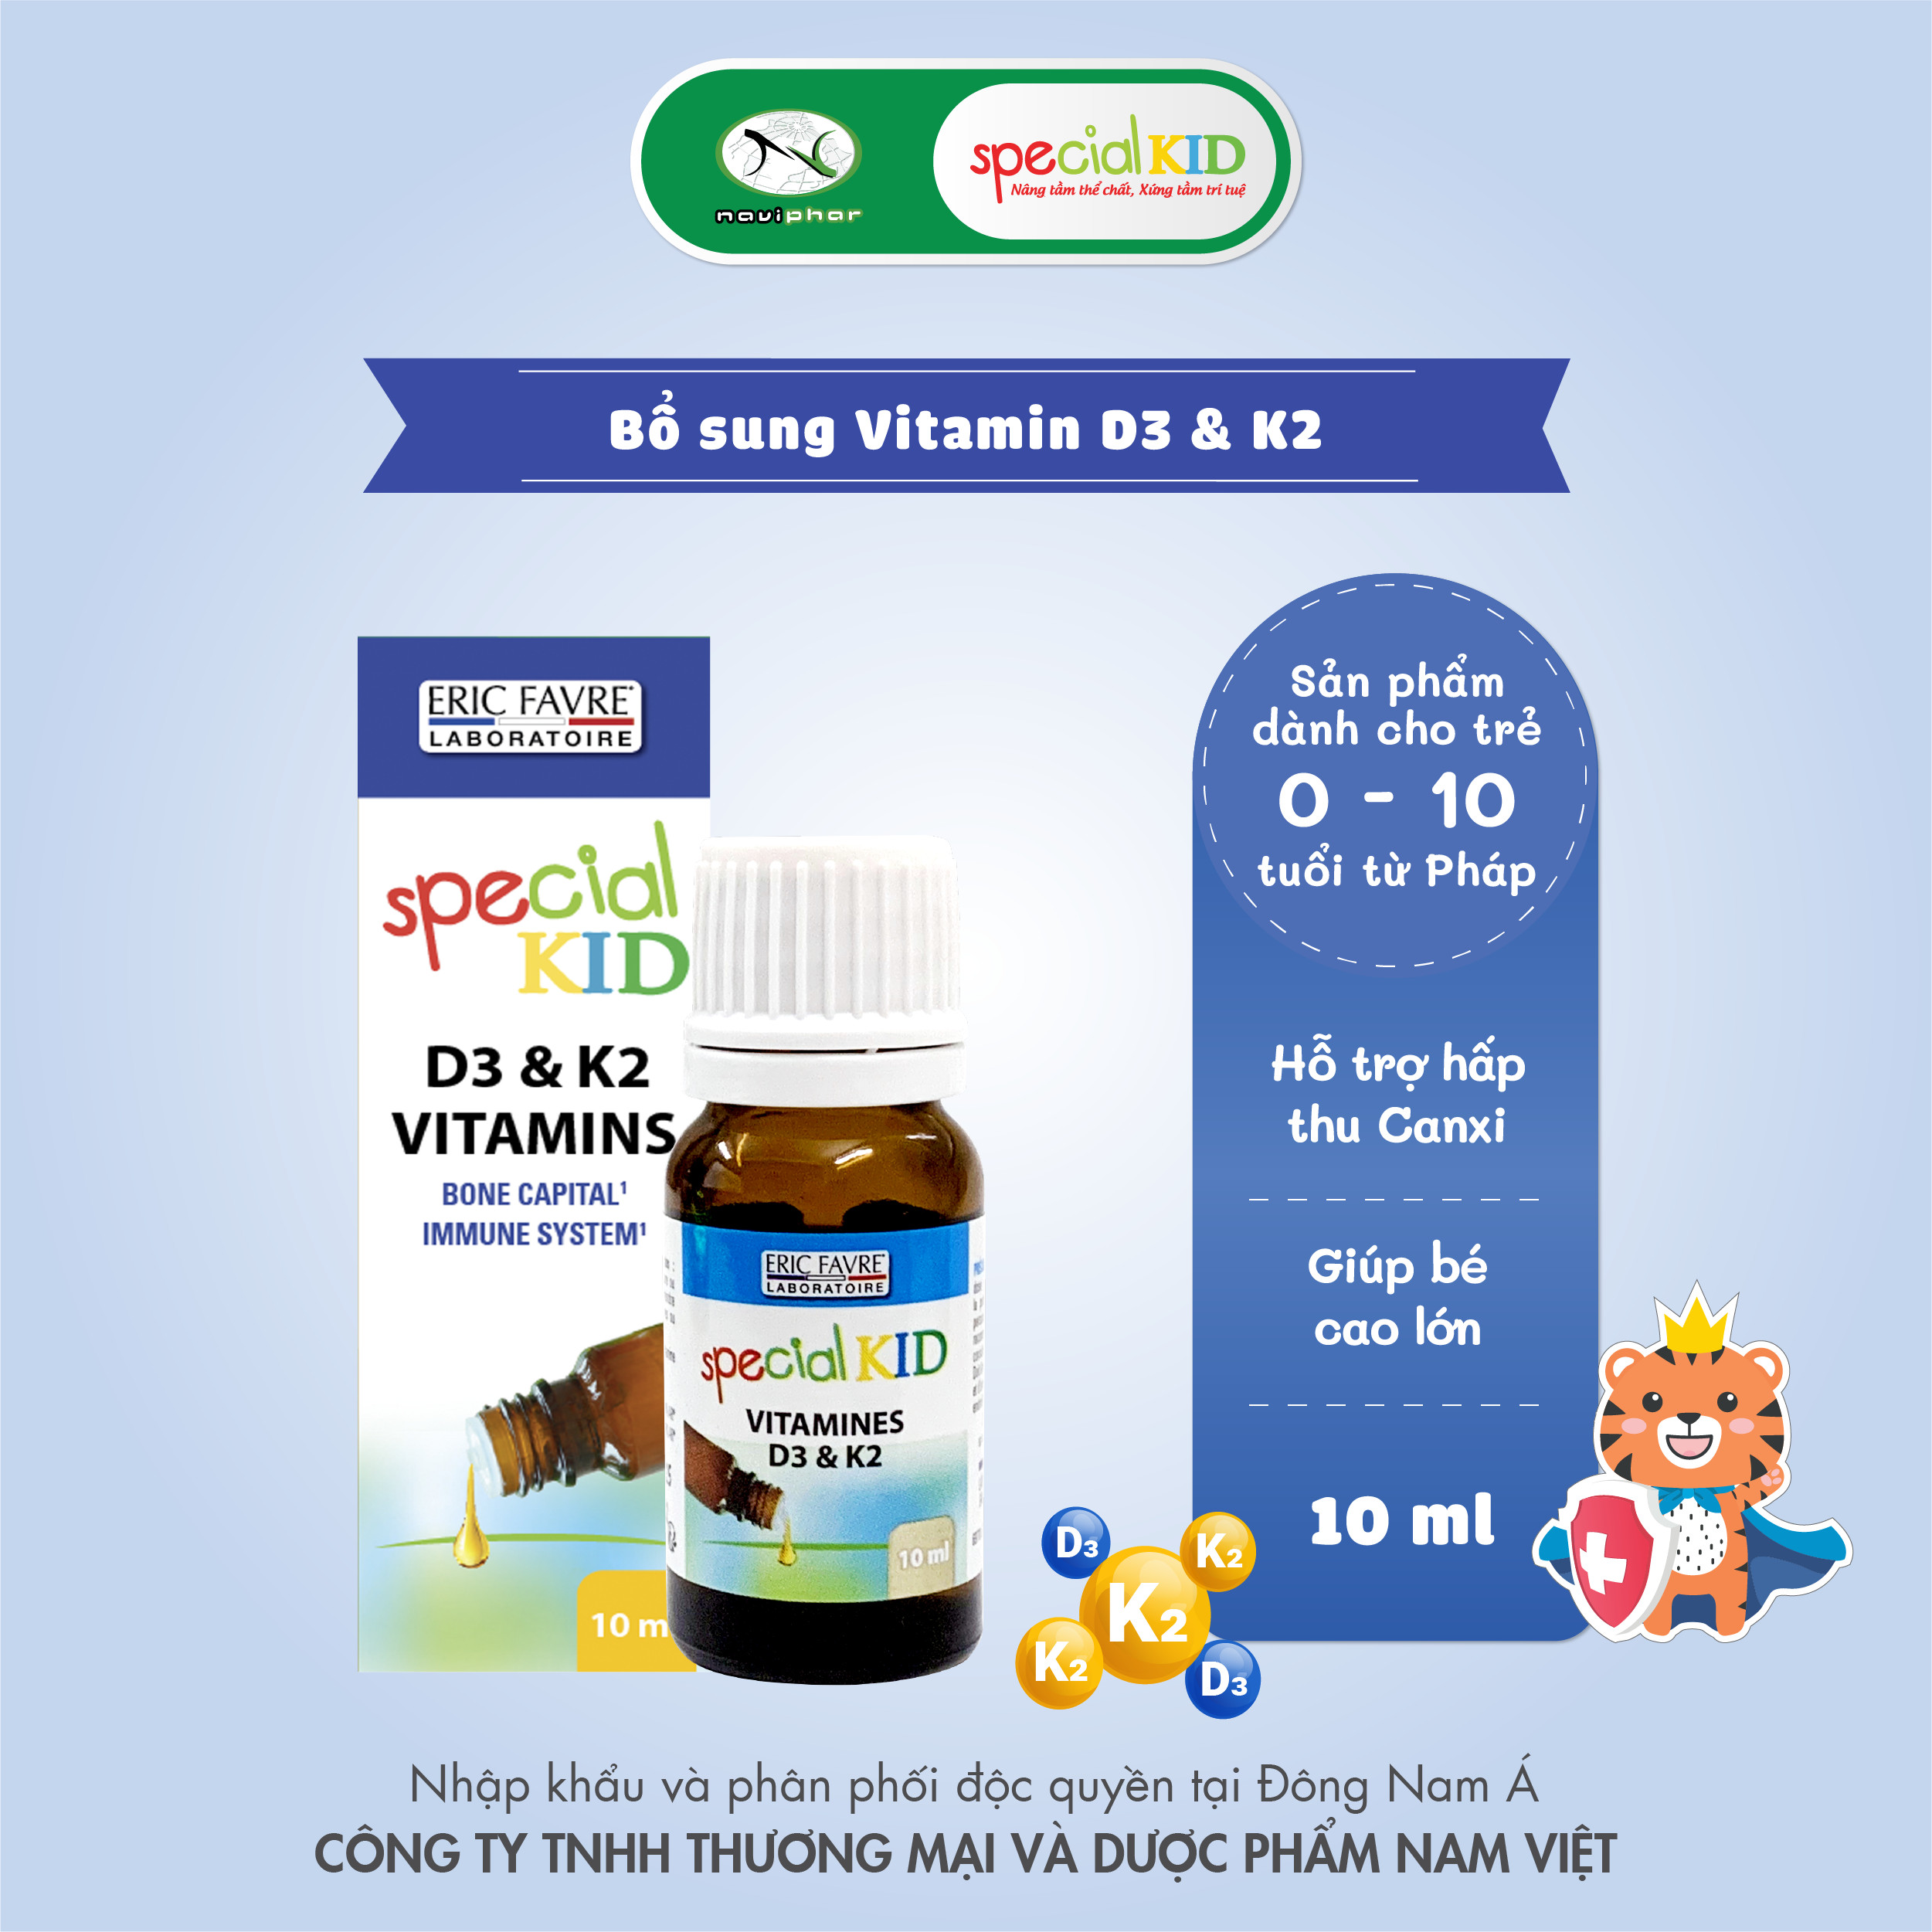 Tinh dầu bổ sung Vitamin D3 và Vitamin K2 hỗ trợ tăng cường hấp thu canxi - TPBVSK Special Kid Vitamines D3 et K2 - 10ml [Nhập khẩu Pháp]